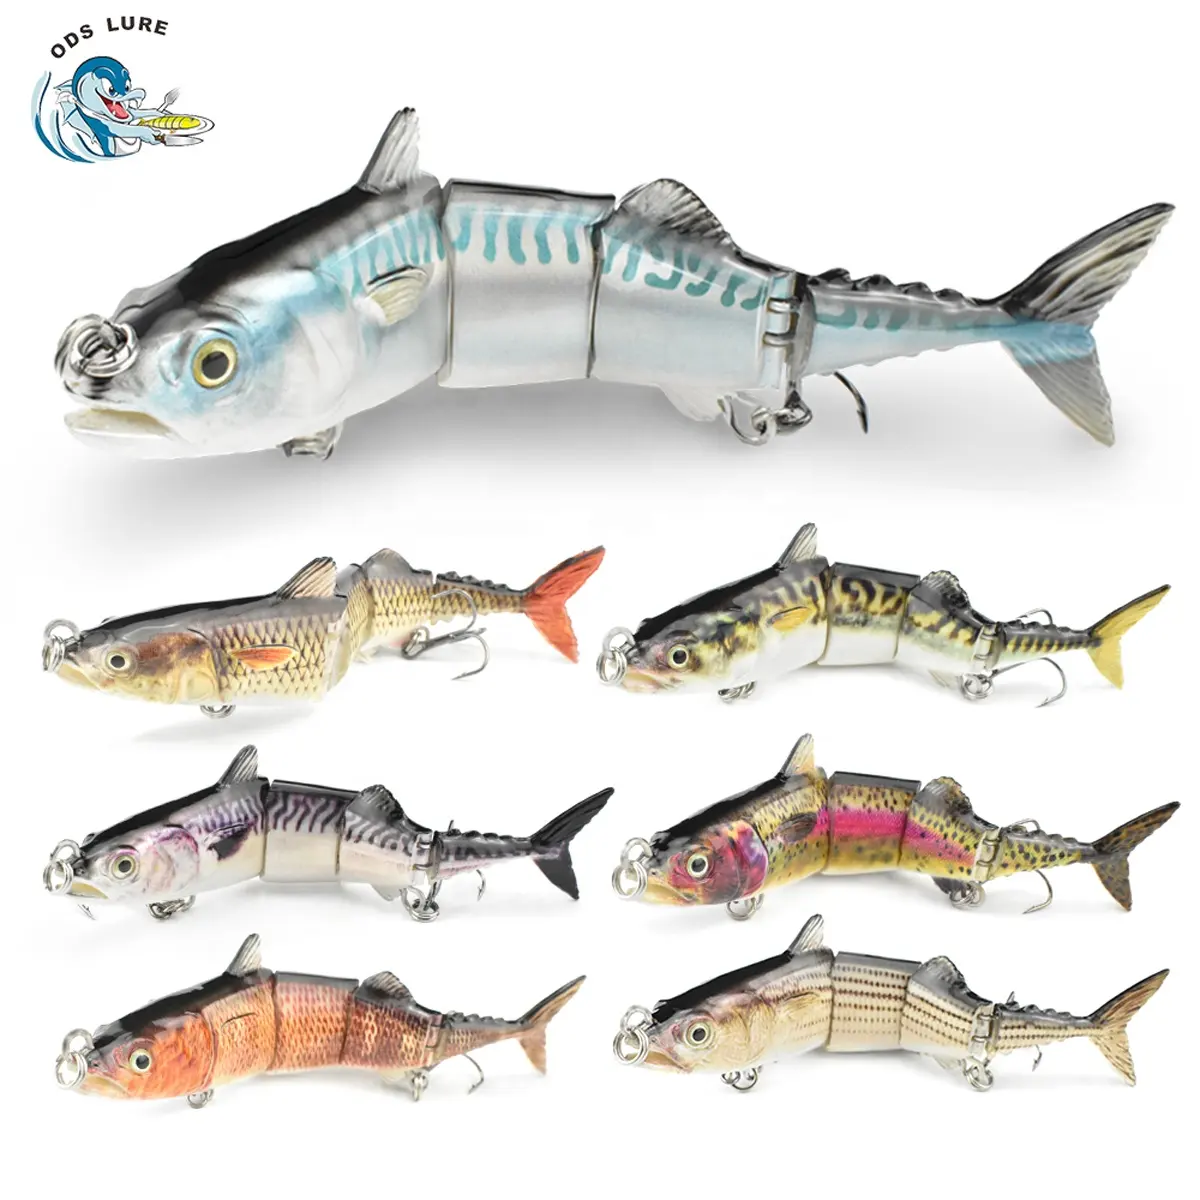 ODS snodato Bass Fishing Bait per acqua salata pesca d'acqua dolce Swimbait quattro sezioni tonno Lure esche da pesca in plastica dura